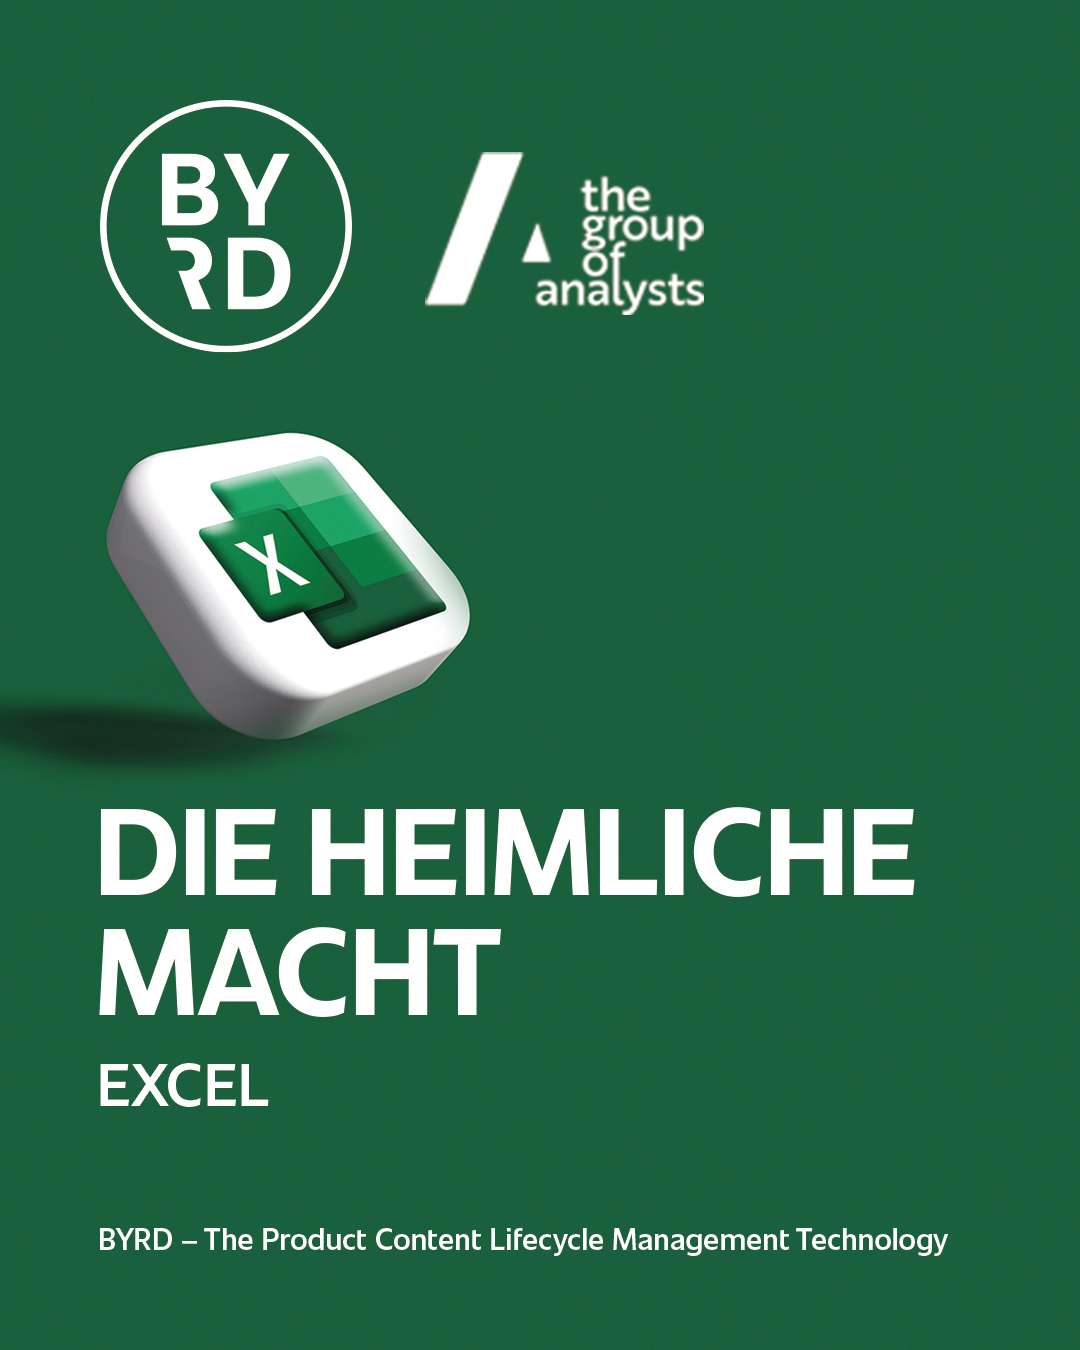 Excel ist die heimliche Macht im Austausch von Produktinformationen